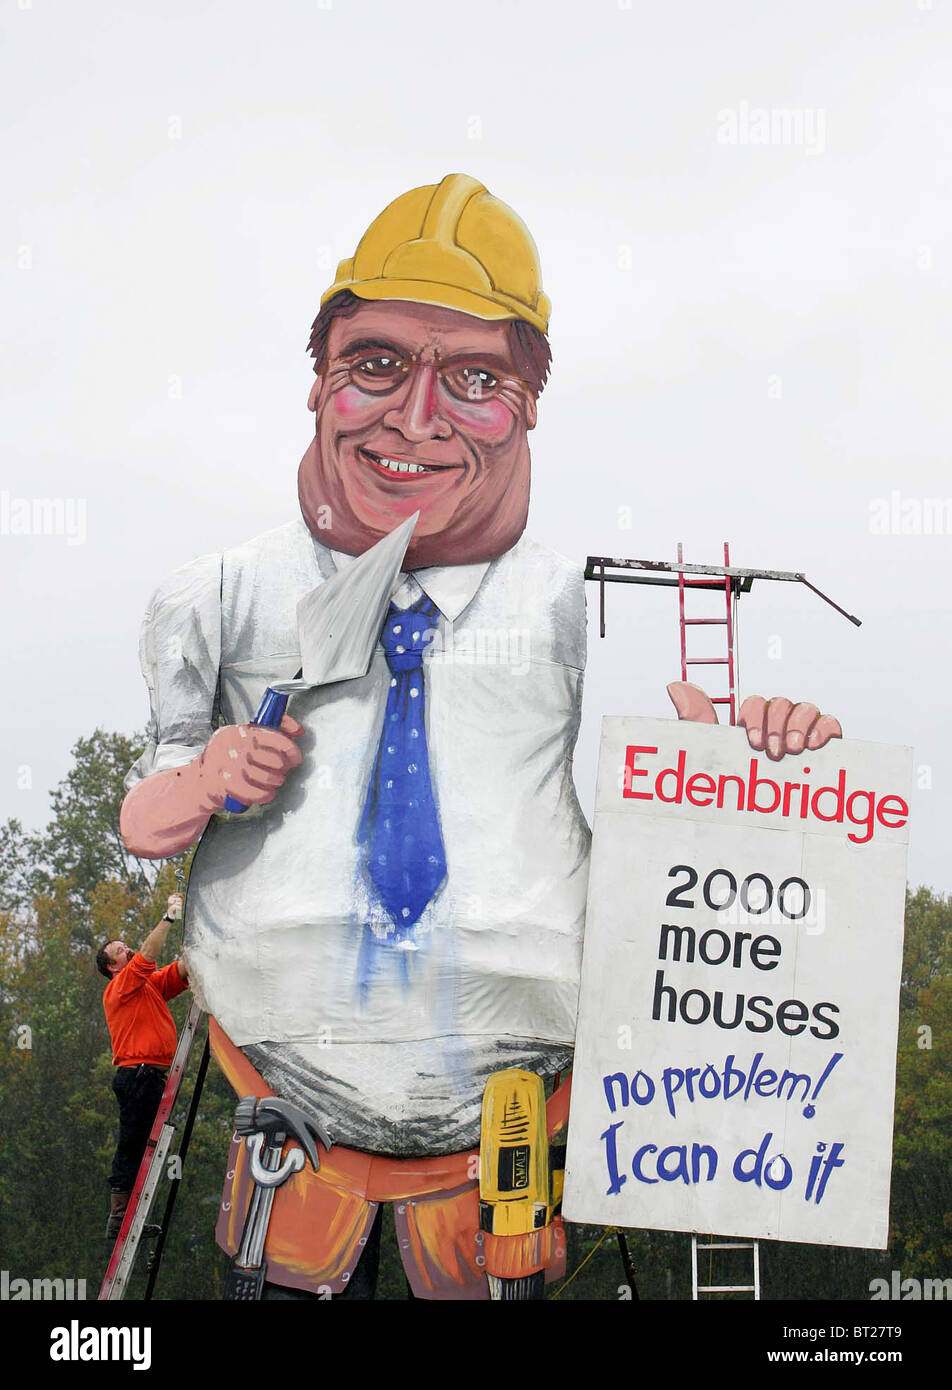 Edenbridge fogata Sociedad efigie de John Prescott. Fotografía por James Boardman Foto de stock